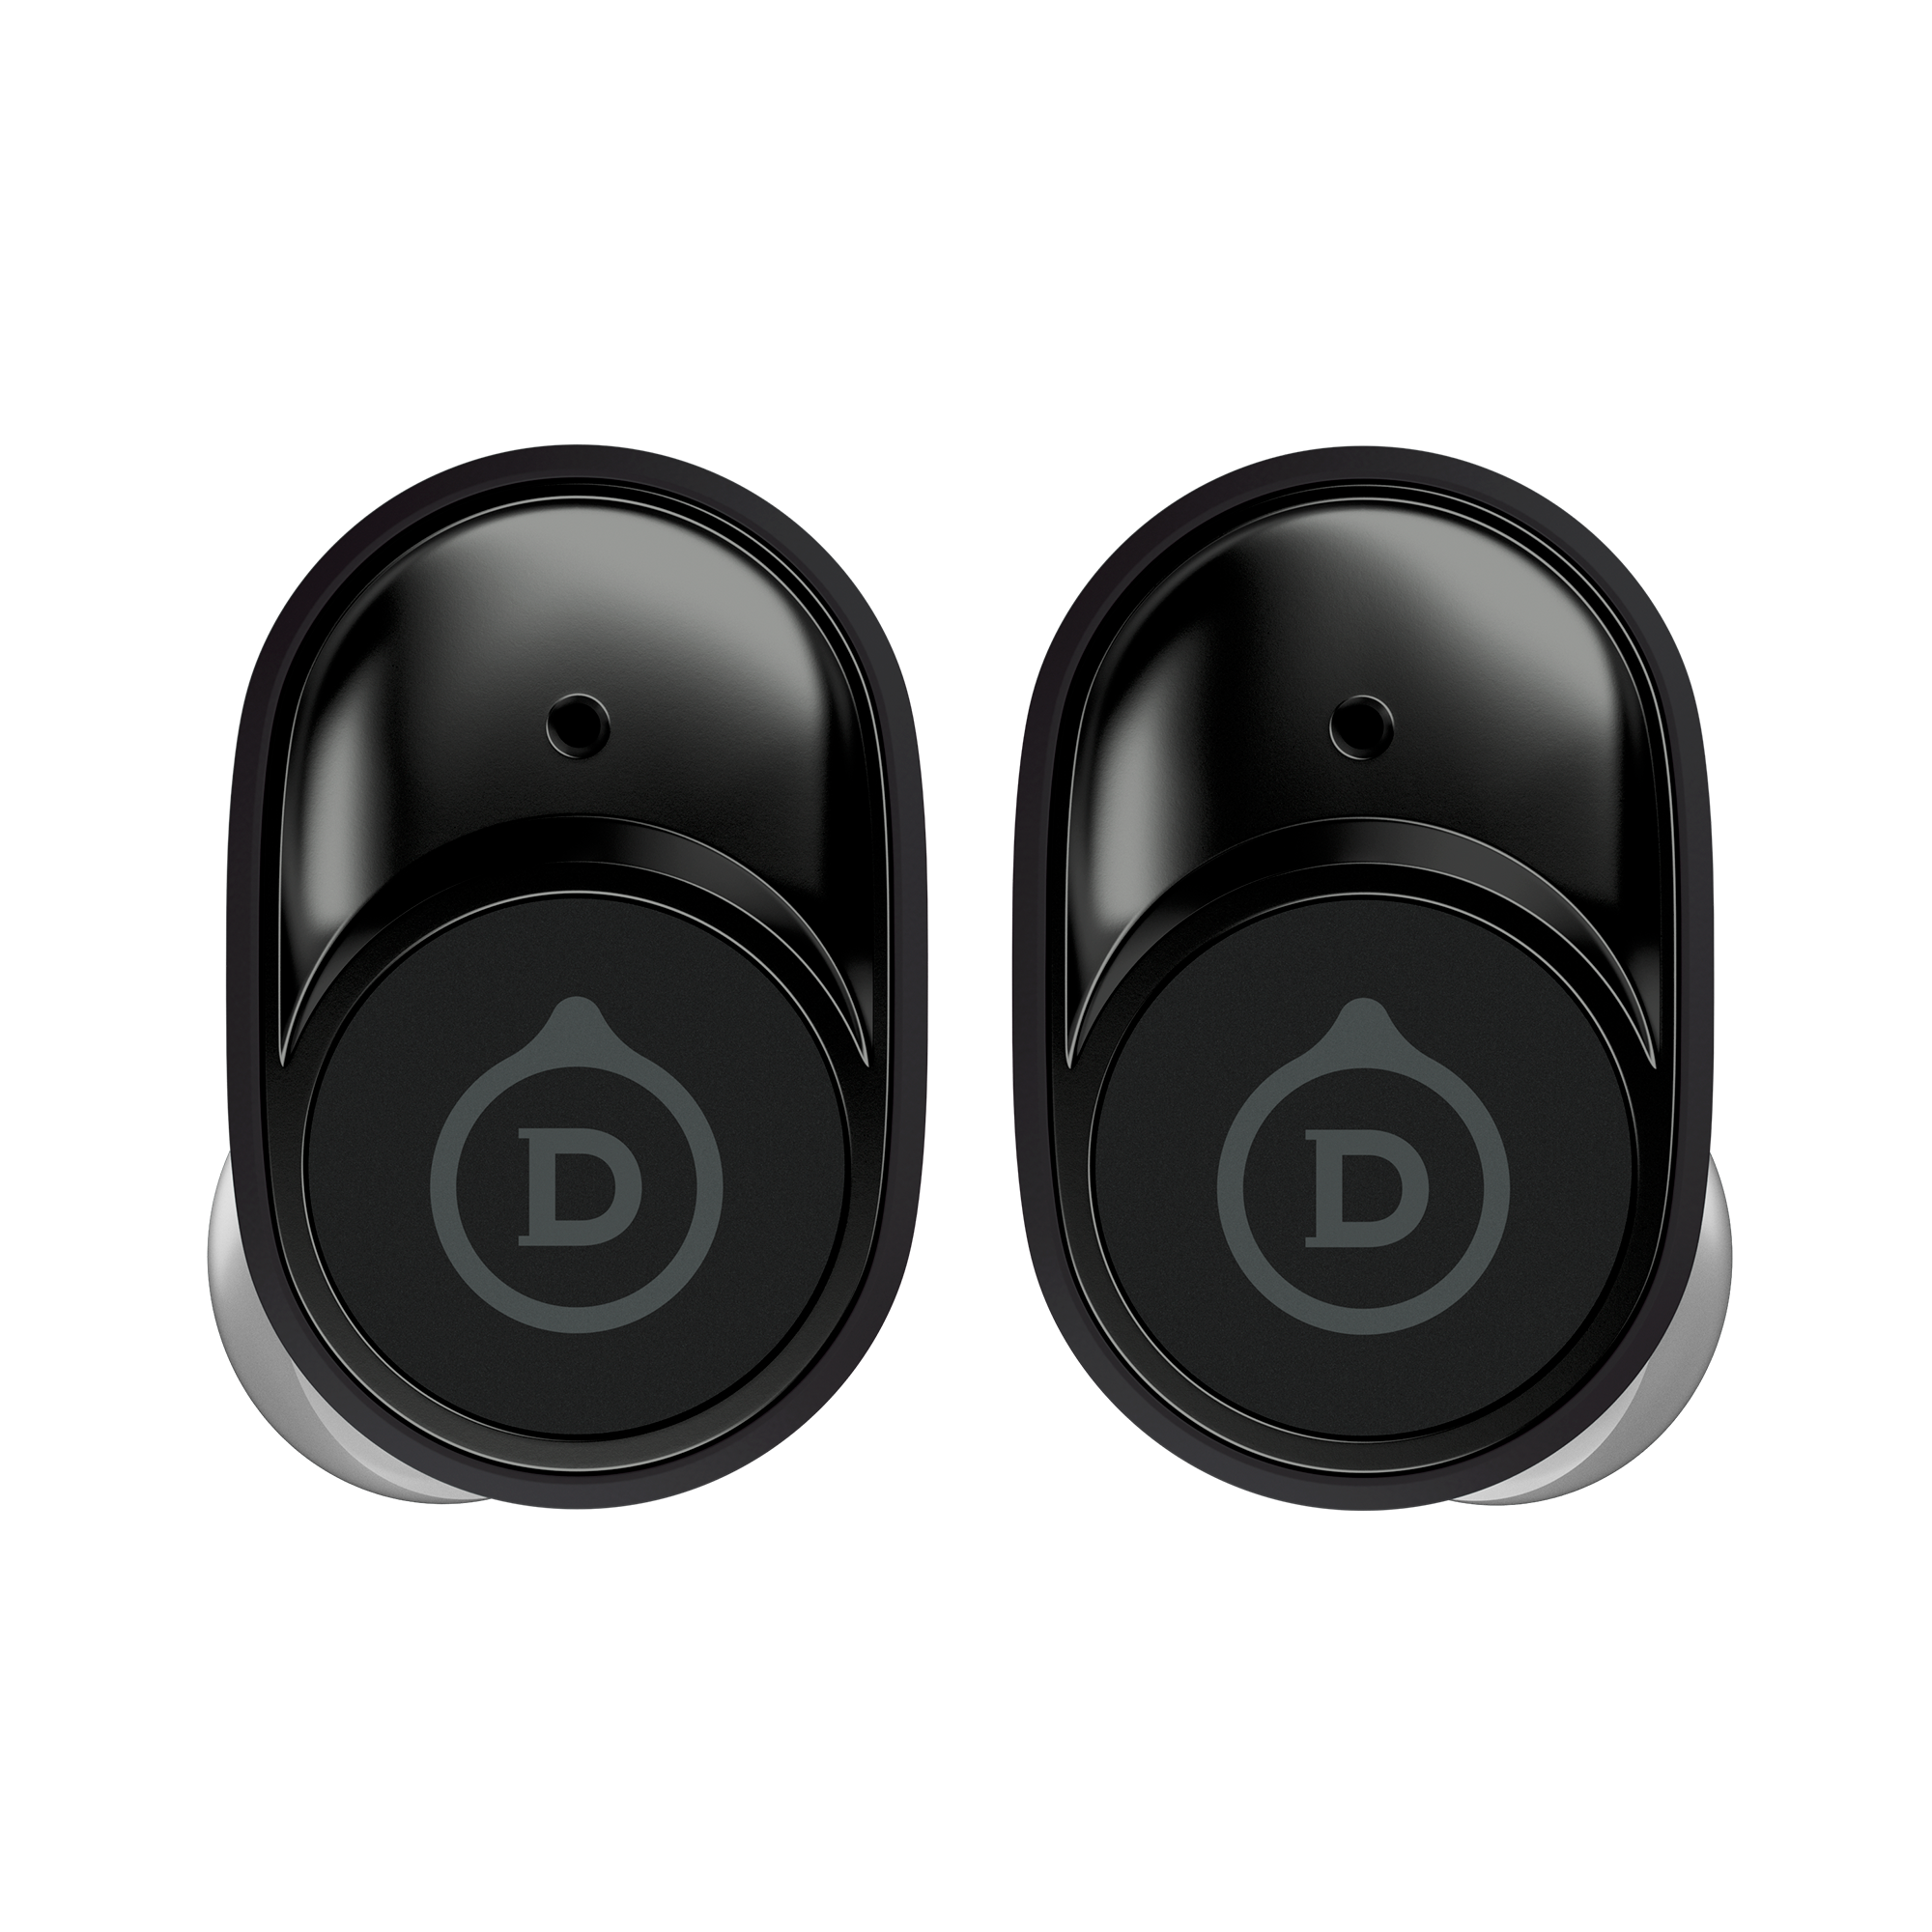 Devialet Gemini - True wireless earbuds